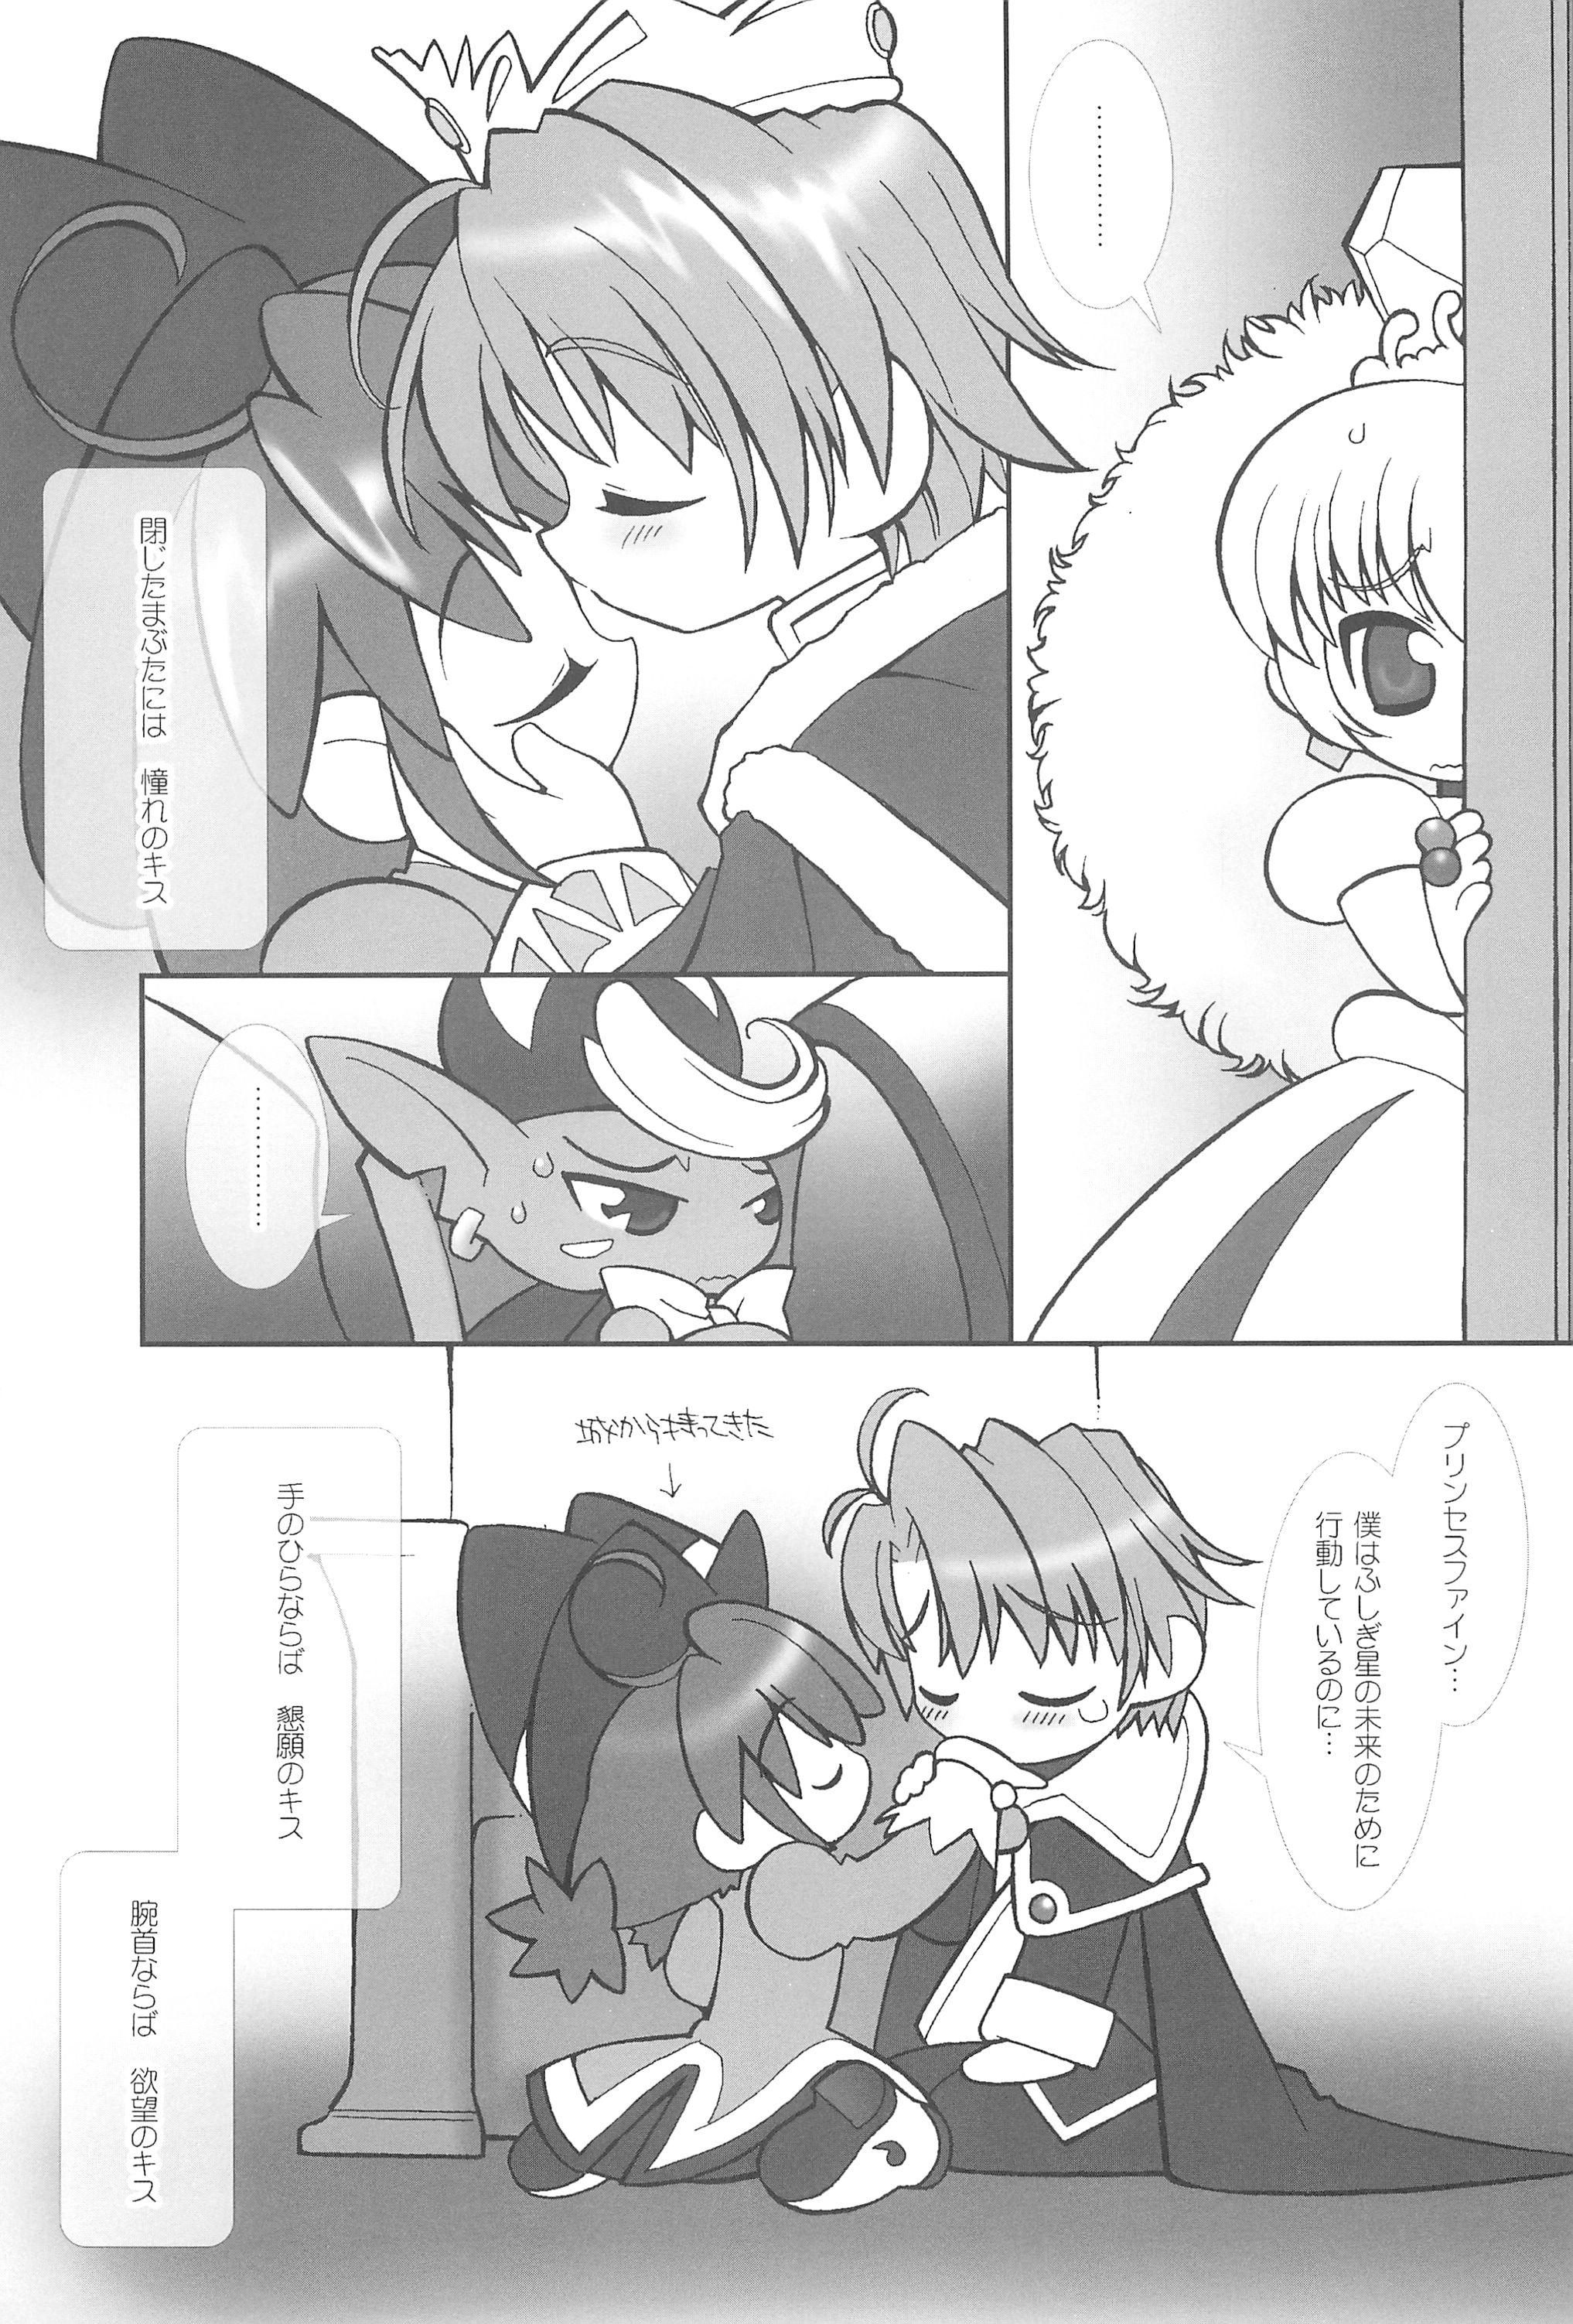 Pool Tsuki no Ura de Aimashou #6 - Let's go to the Darkside of the Moon #6 - Fushigiboshi no futagohime Cartoon - Page 7